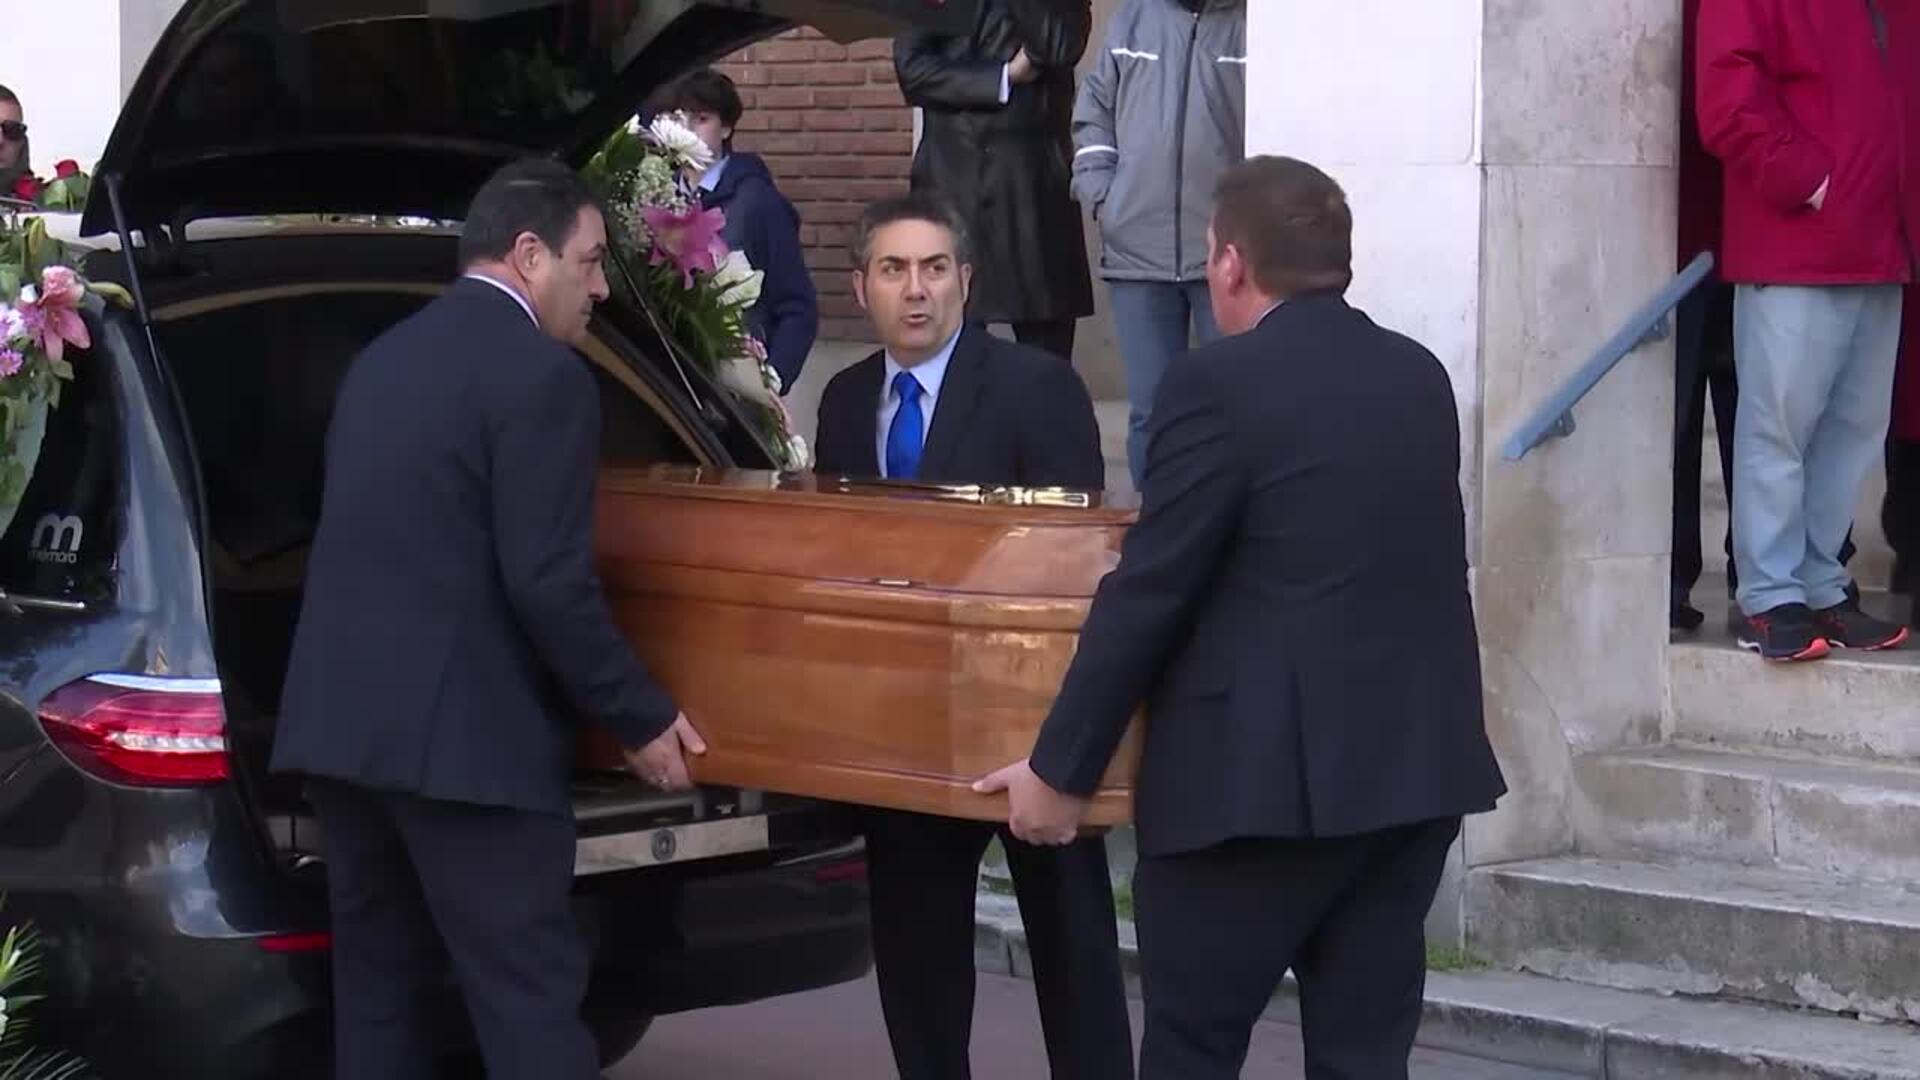 Rabia en Valladolid en el funeral por Paloma y su hija, víctimas de violencia machista